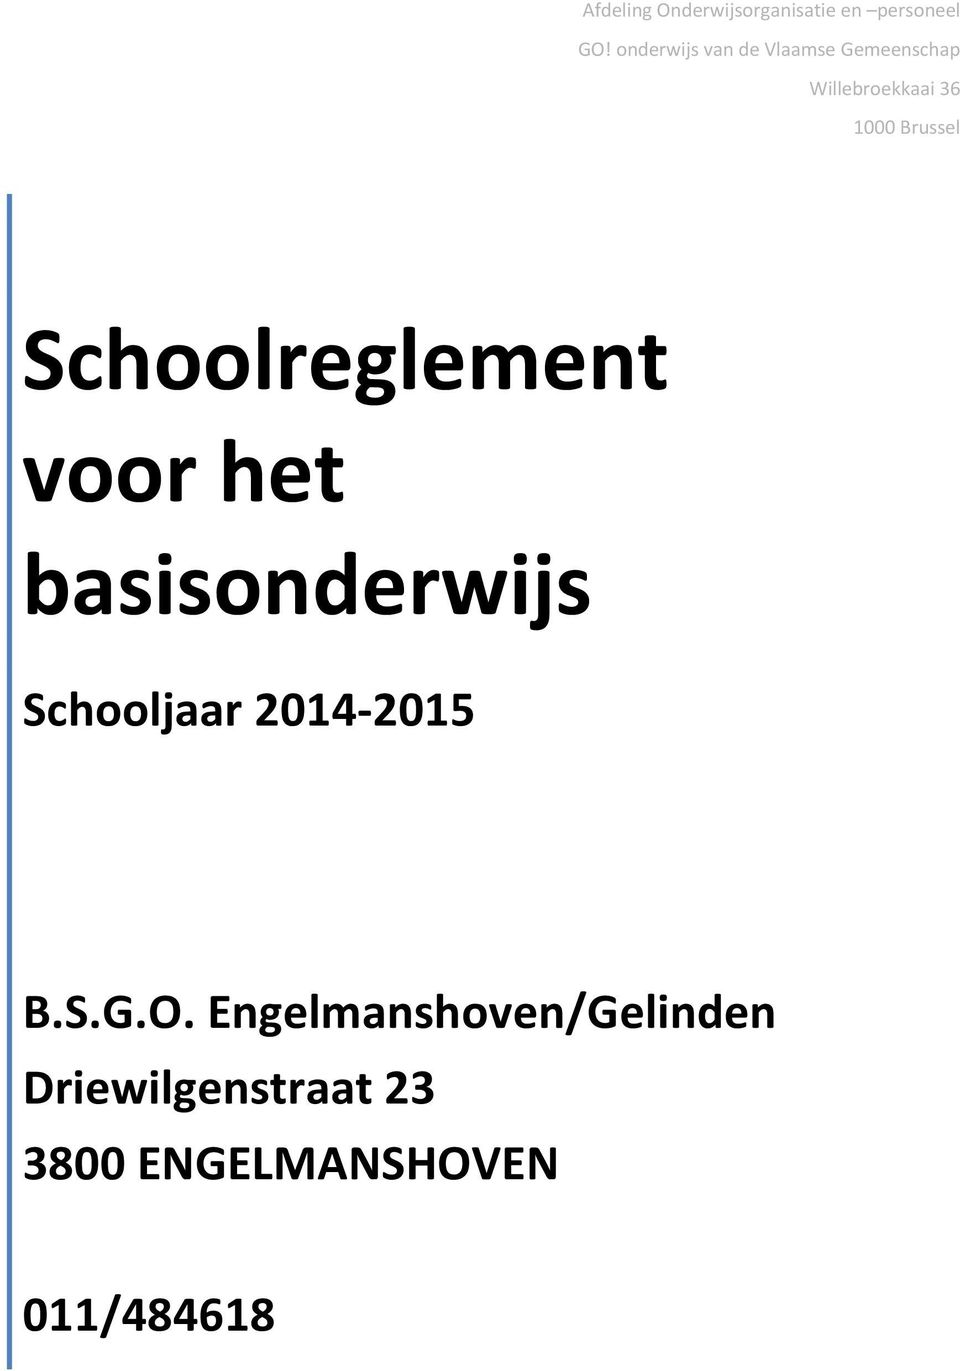 Brussel Schoolreglement voor het basisonderwijs Schooljaar